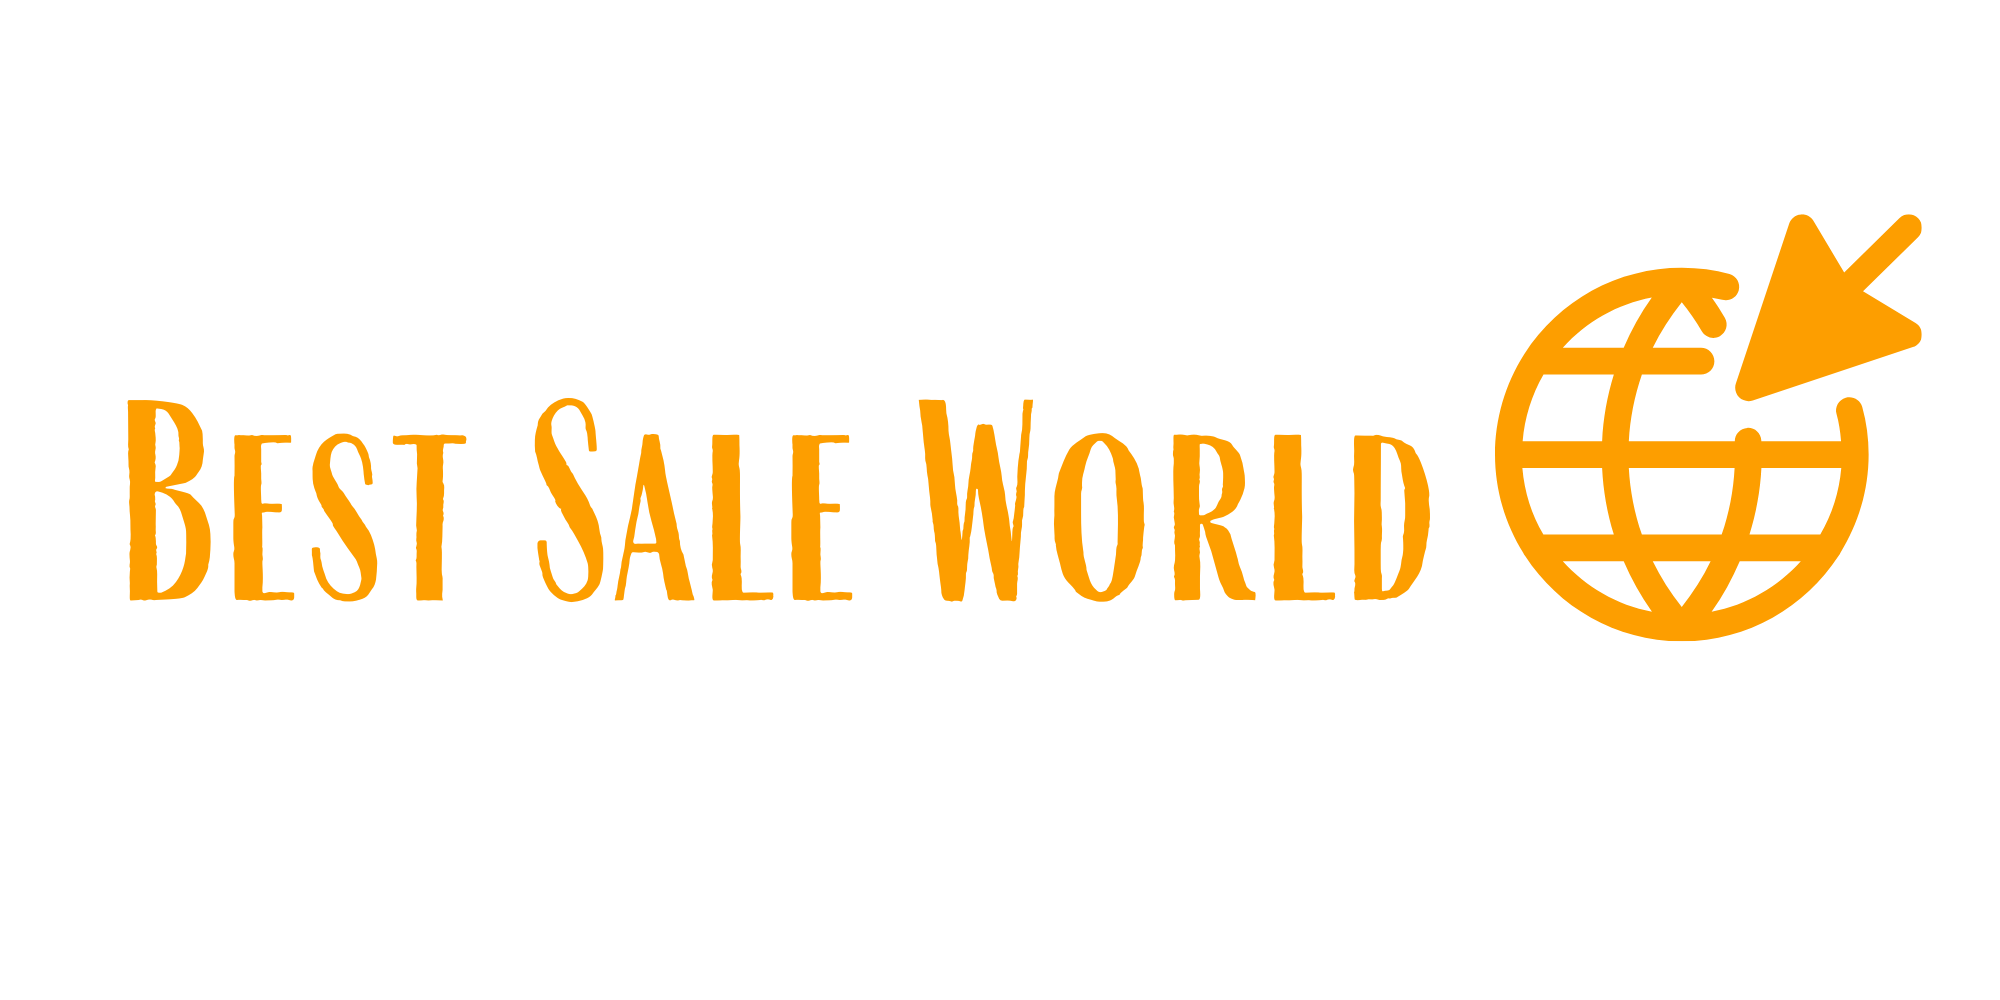 Best Sale World